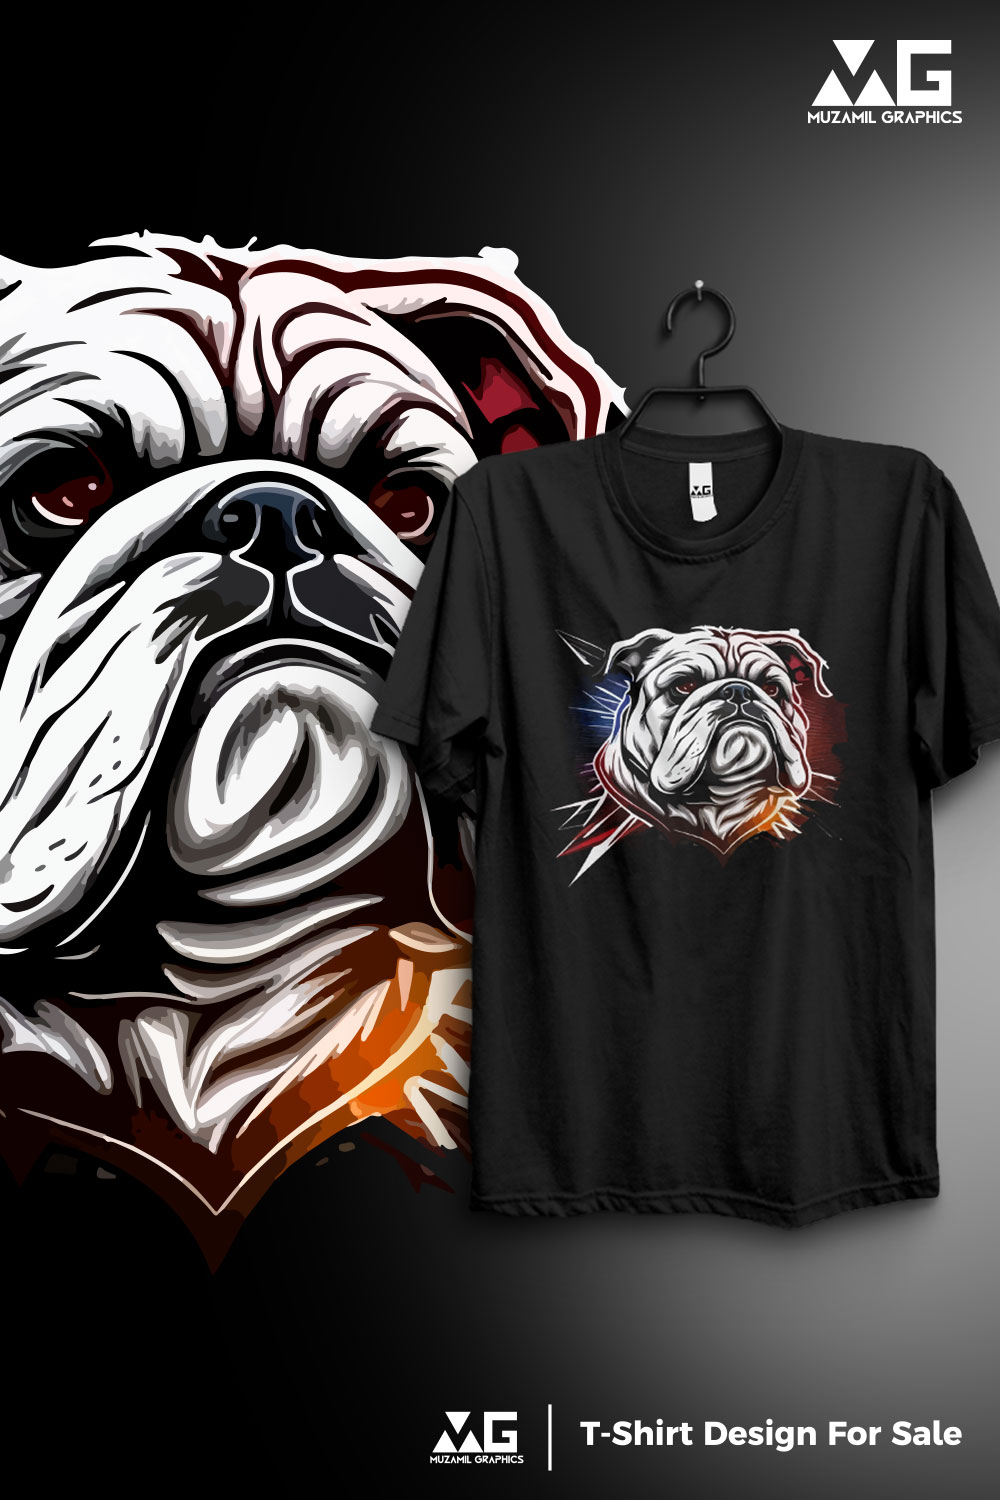 T-shirt design of bull dog pinterest preview image.